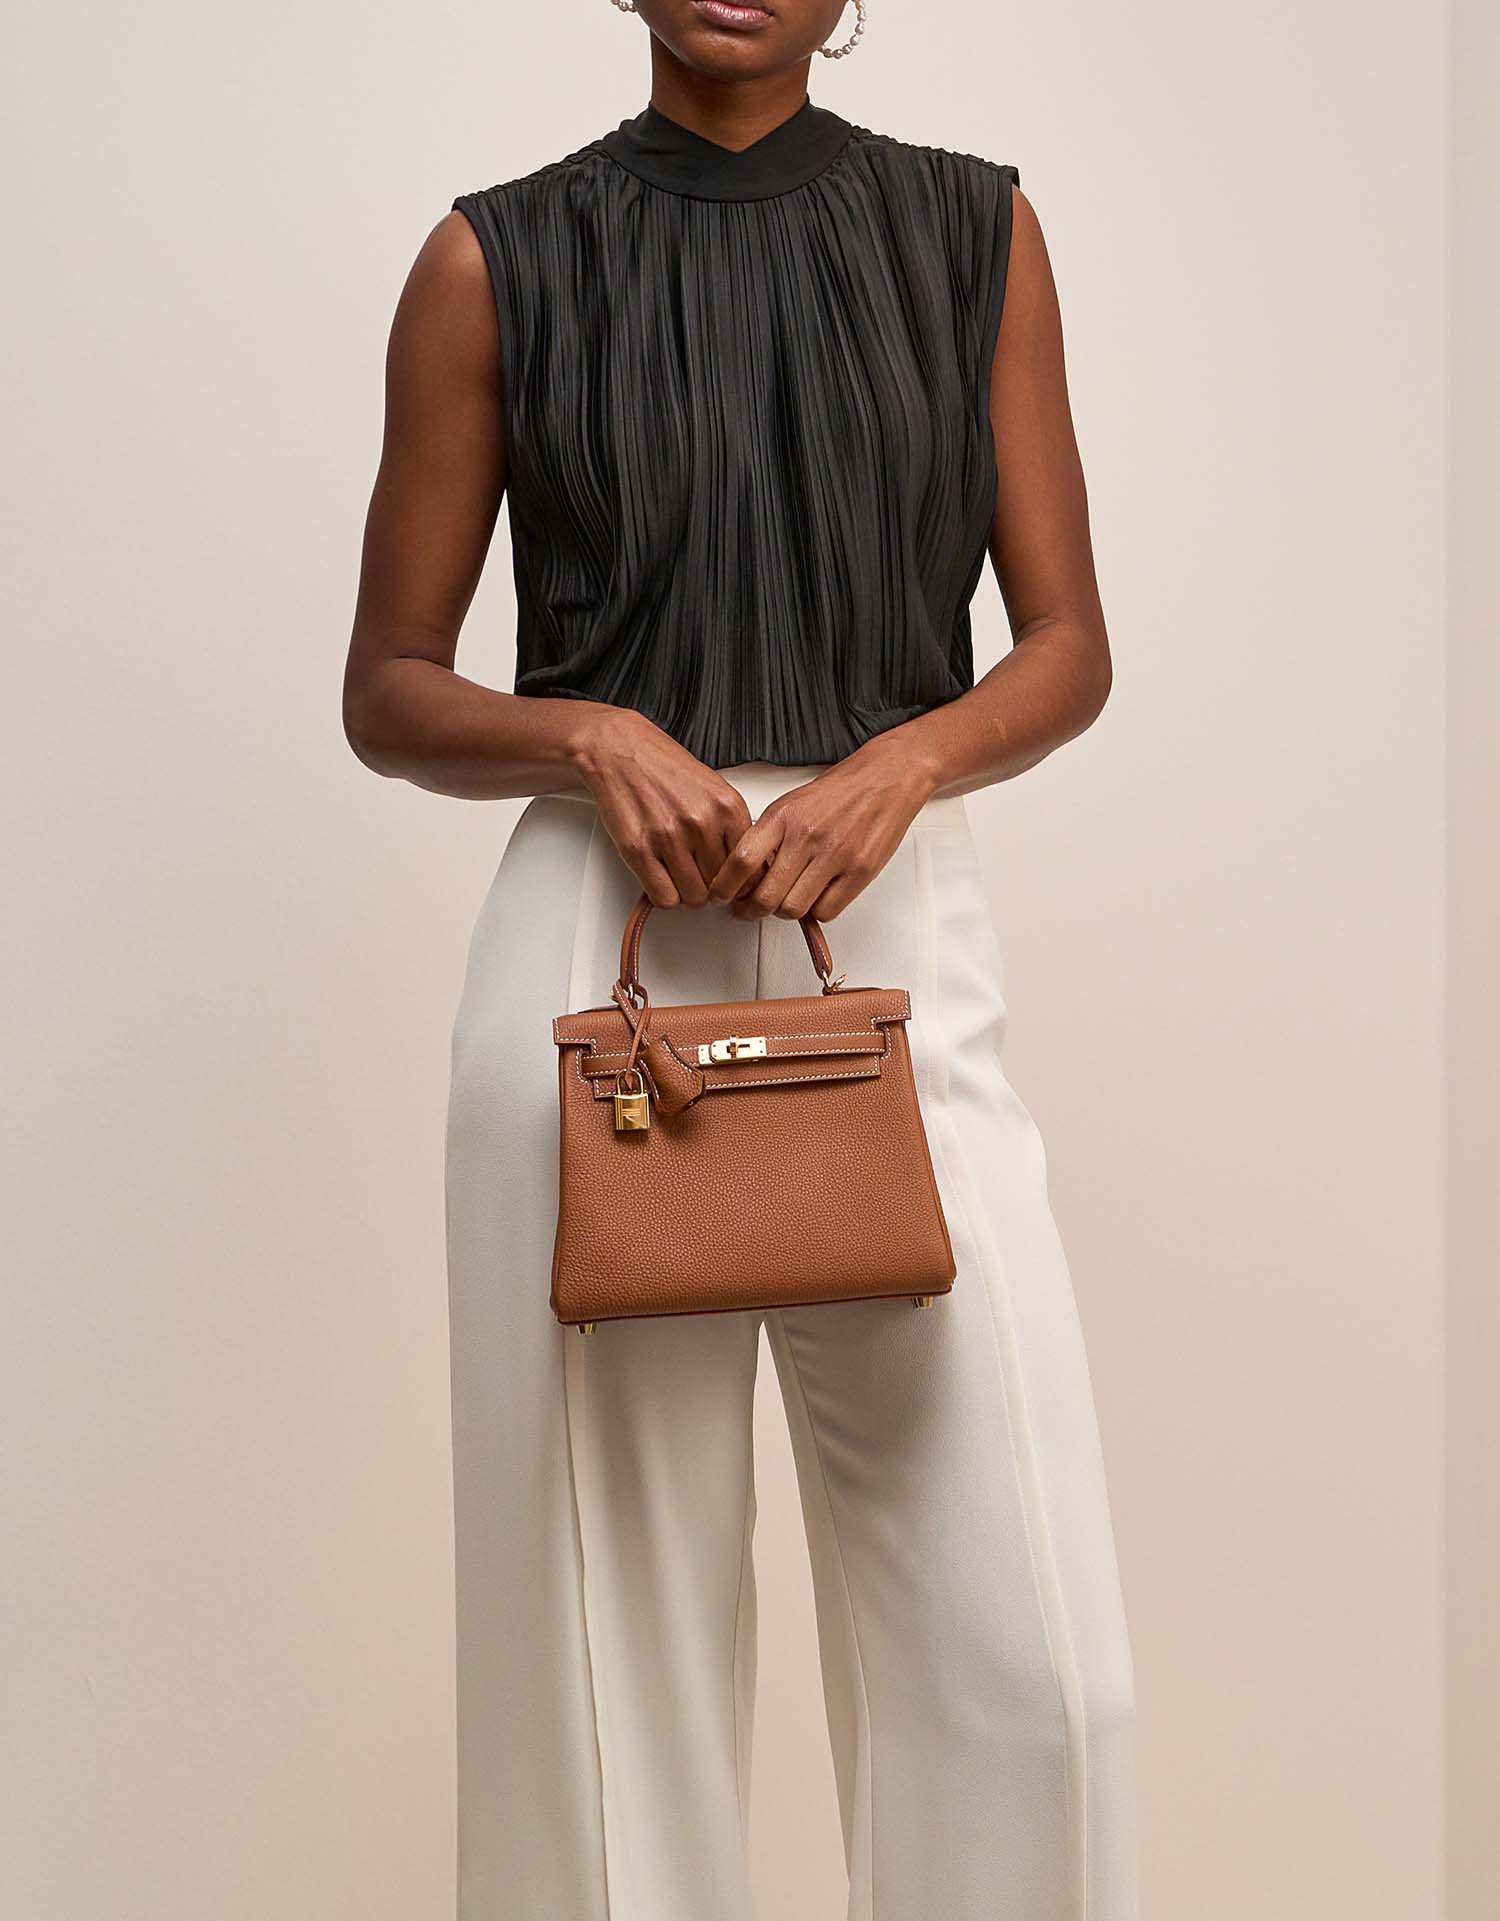 Hermès Kelly 25 Gold on Model | Sell your designer bag on Saclab.com